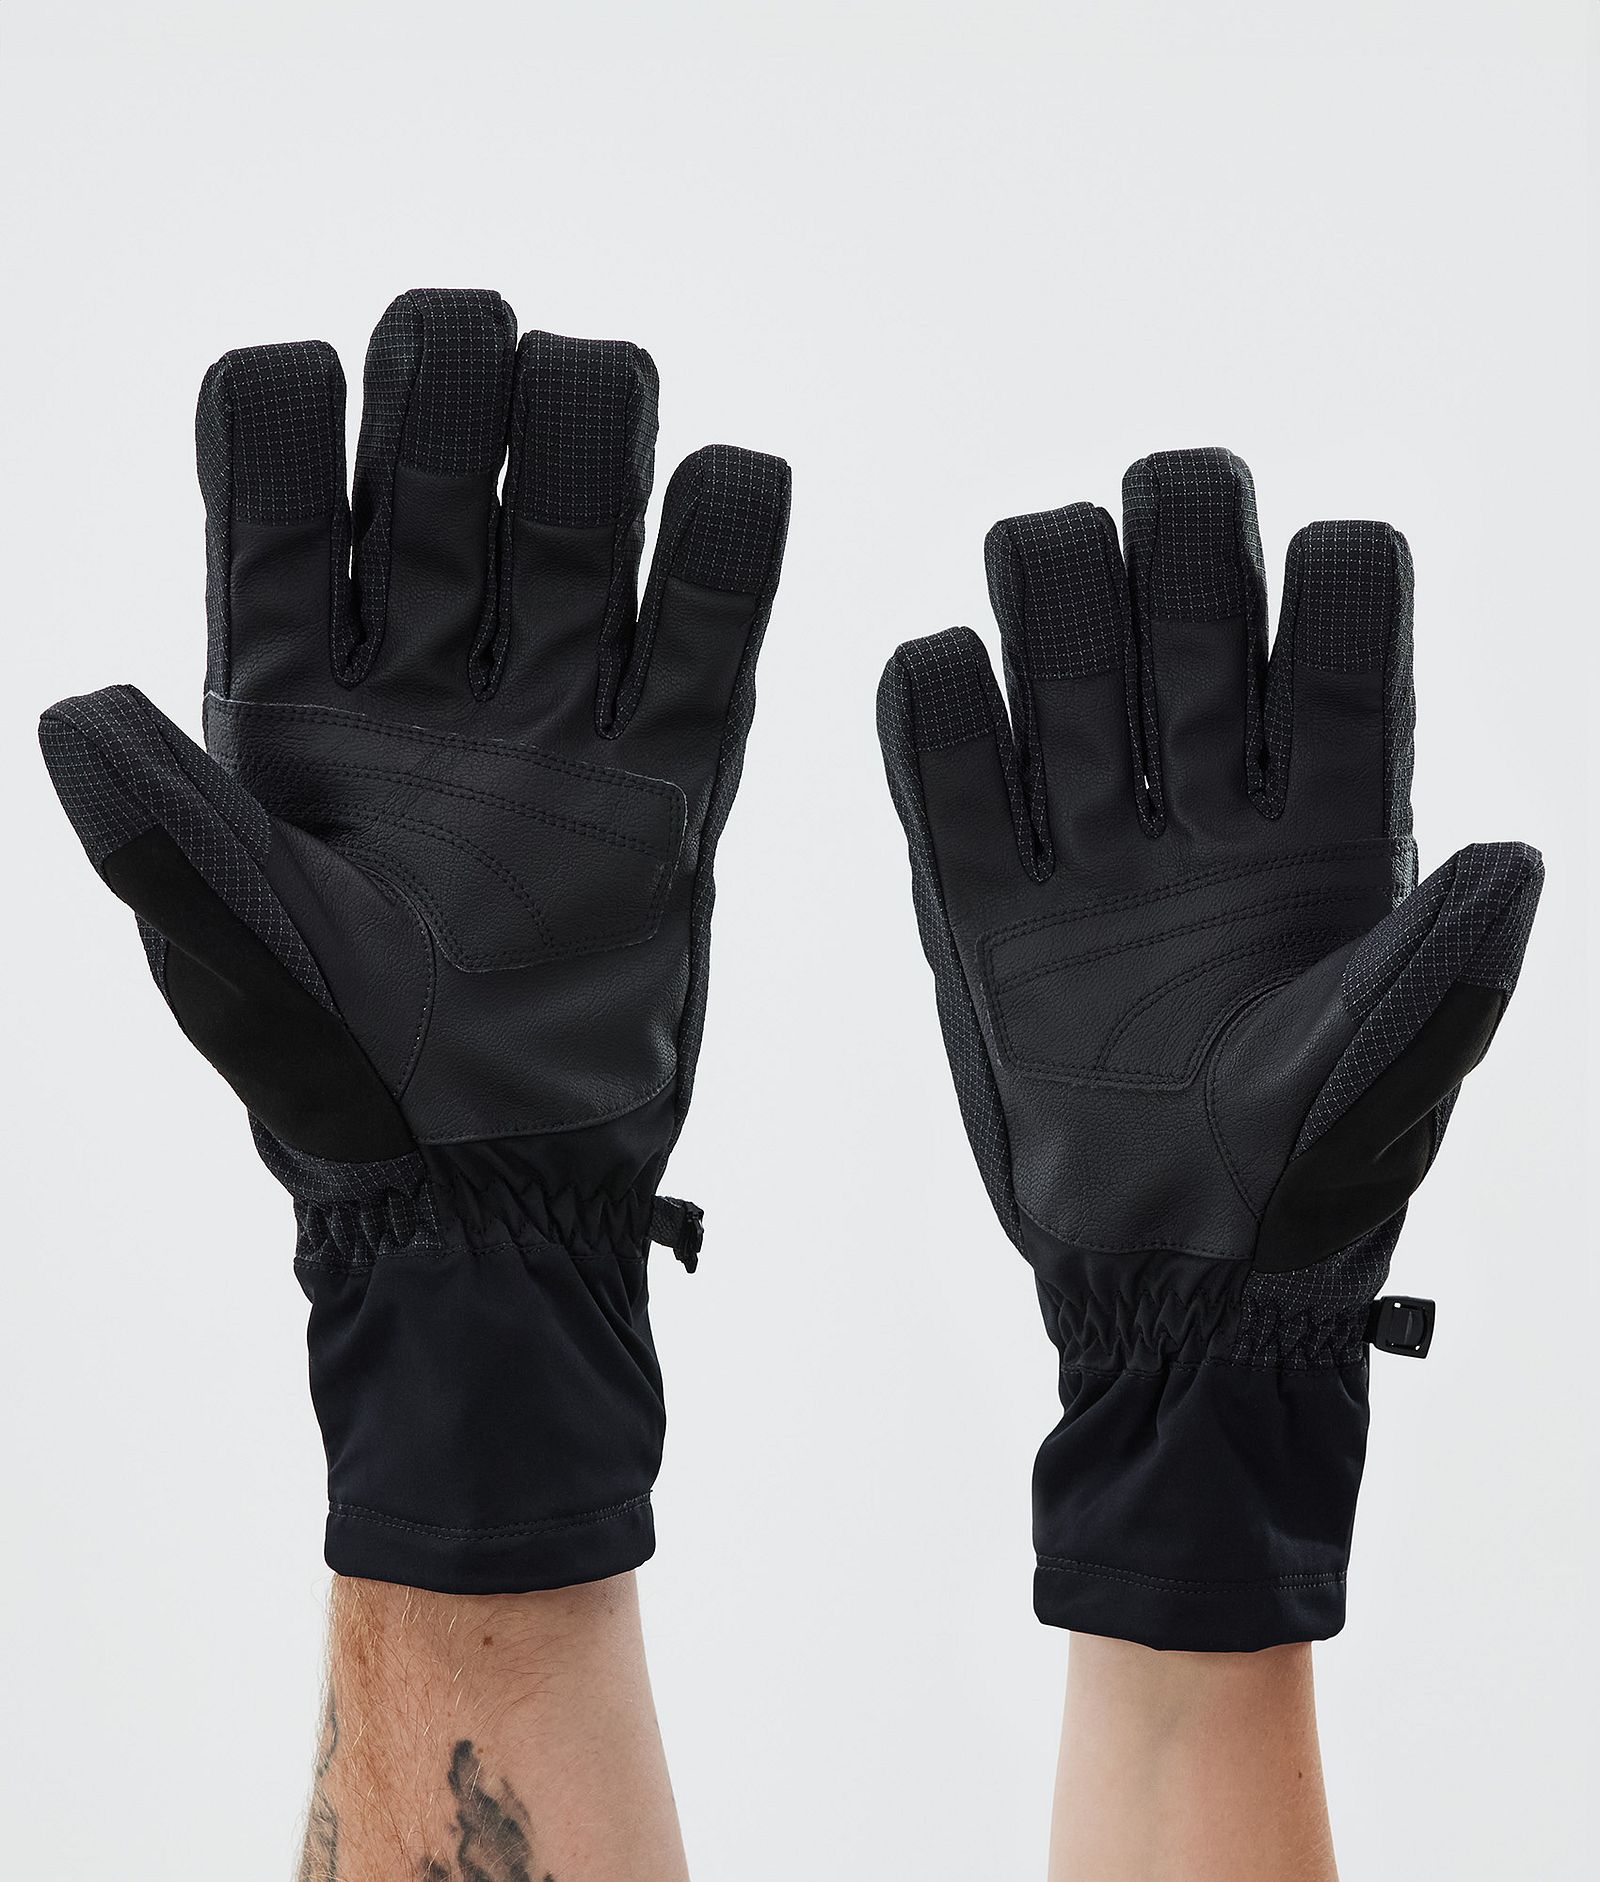 Kilo Ski Gloves Light Grey, Image 2 of 5